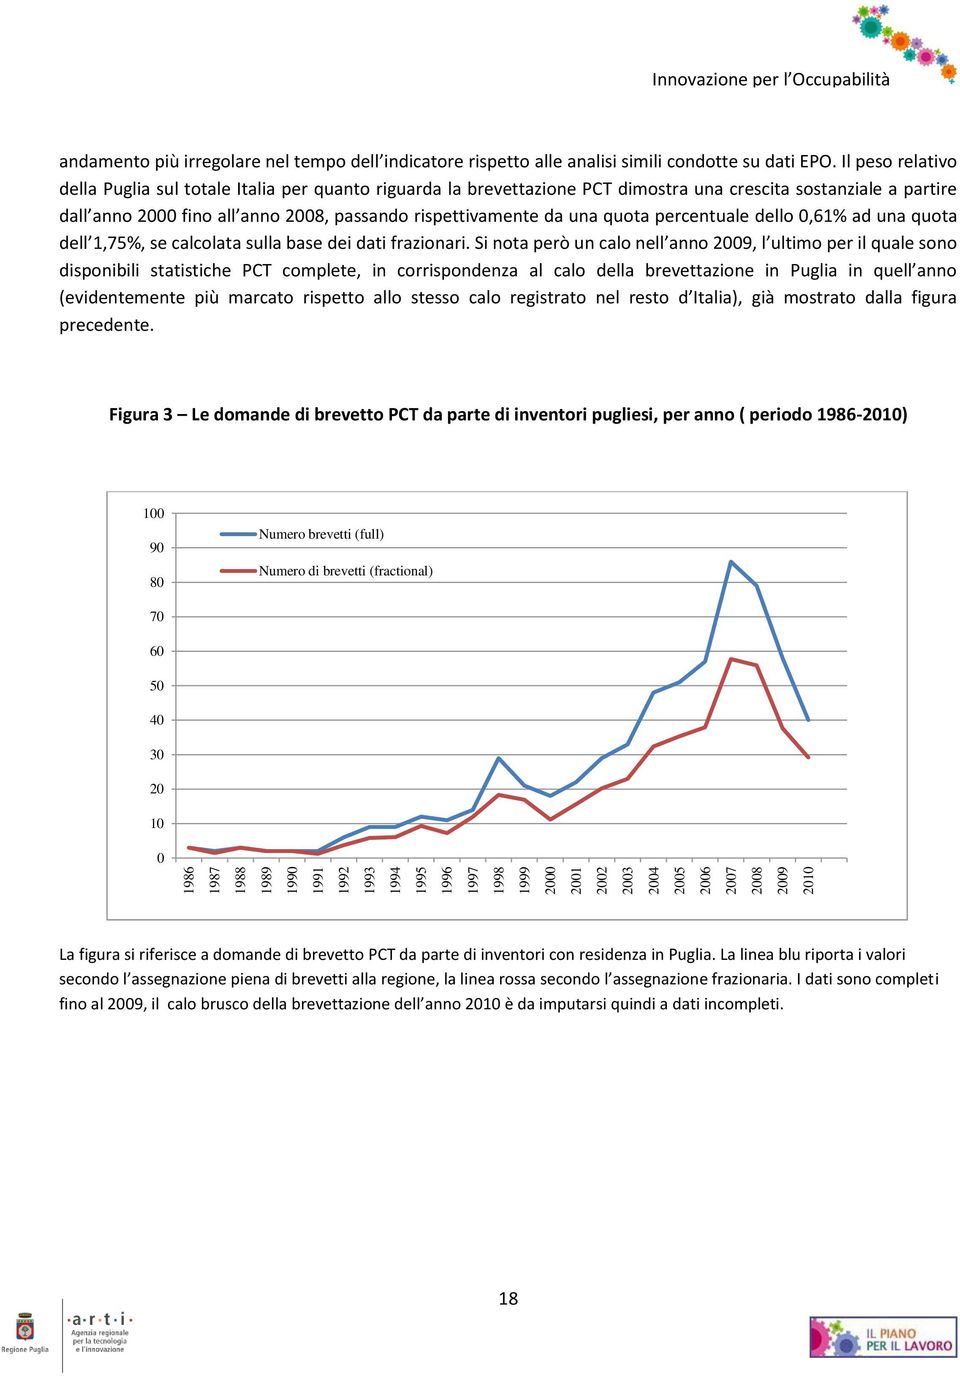 Il peso relativo della Puglia sul totale Italia per quanto riguarda la brevettazione PCT dimostra una crescita sostanziale a partire dall anno 2000 fino all anno 2008, passando rispettivamente da una